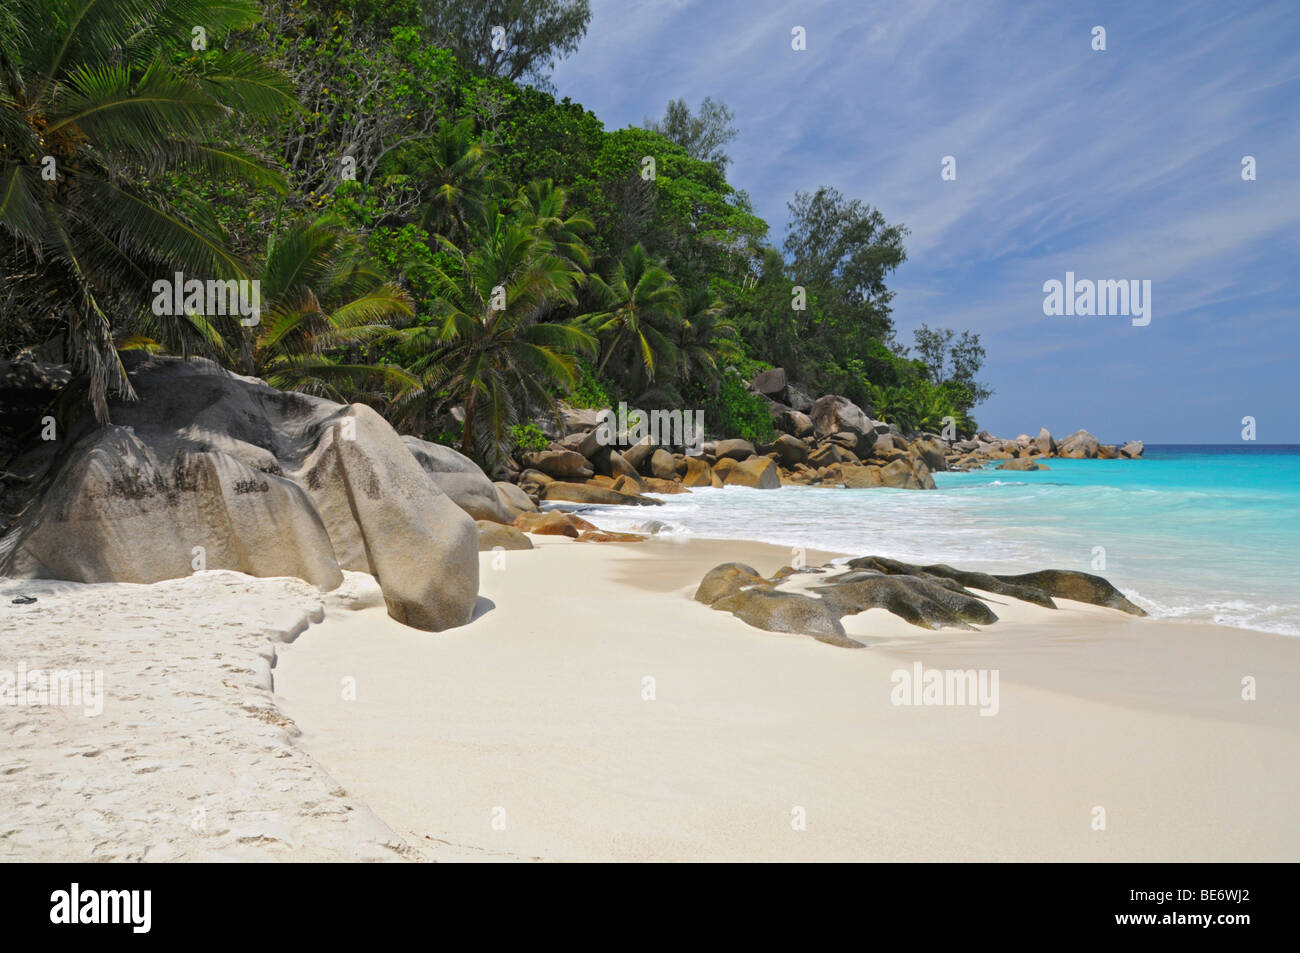 Plage de rochers et végétation tropicale, Anse Georgette, Praslin Island, Seychelles, Afrique, Océan Indien Banque D'Images